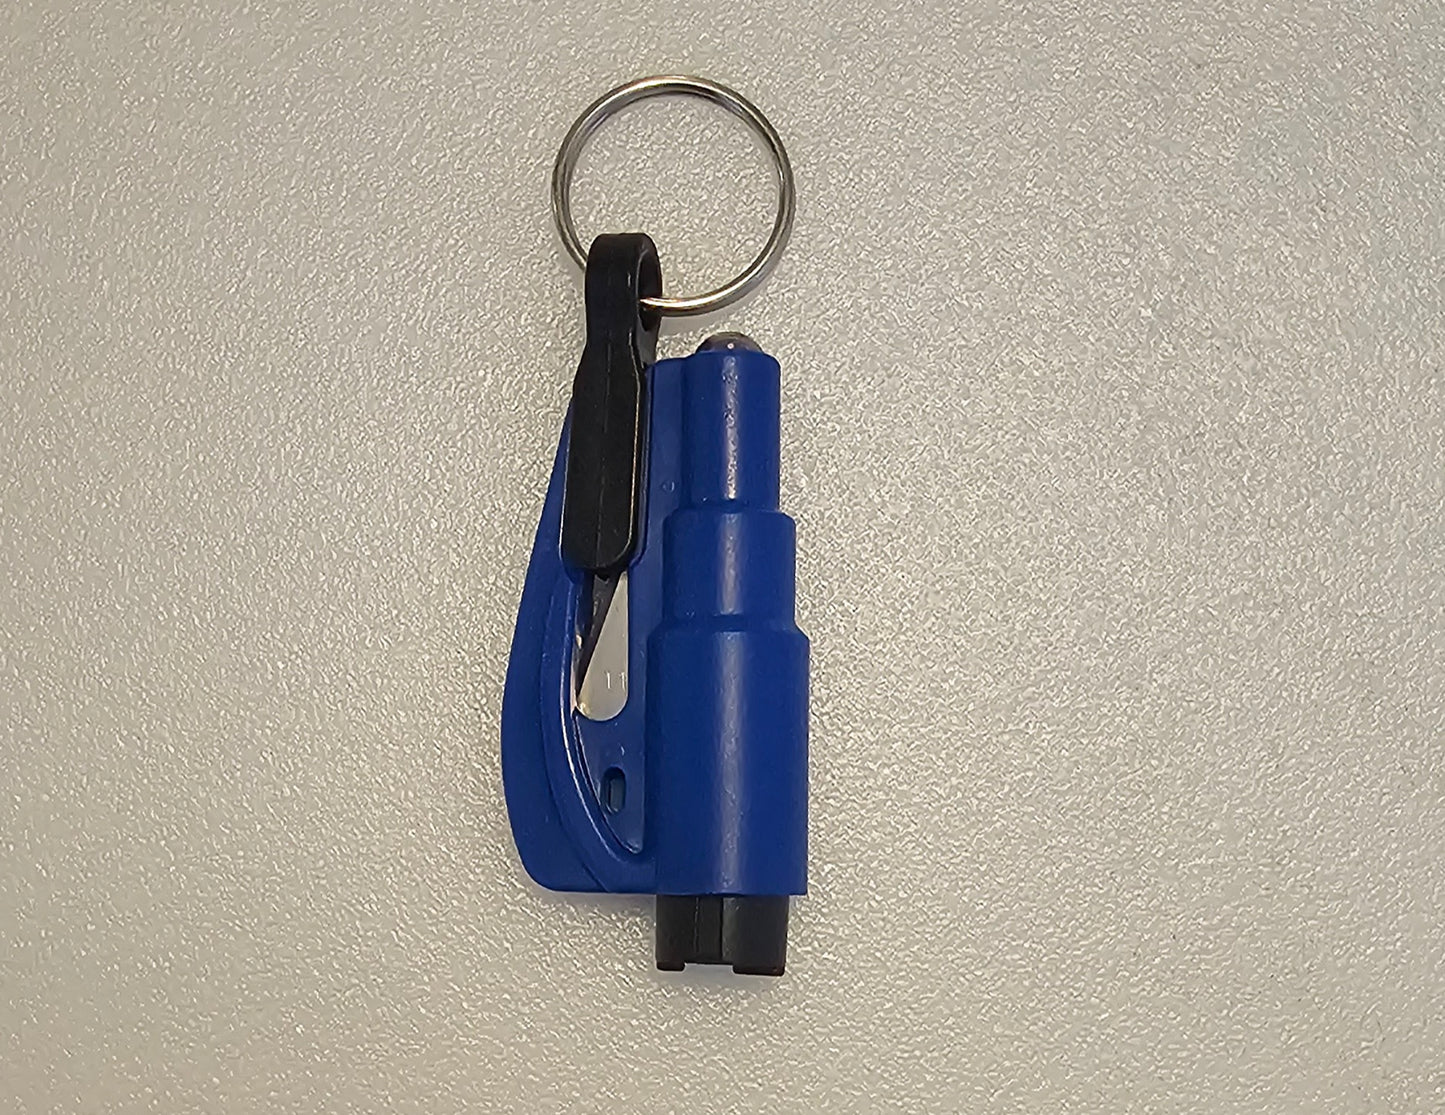 New- Safety keychain window breaker seat belt cutter